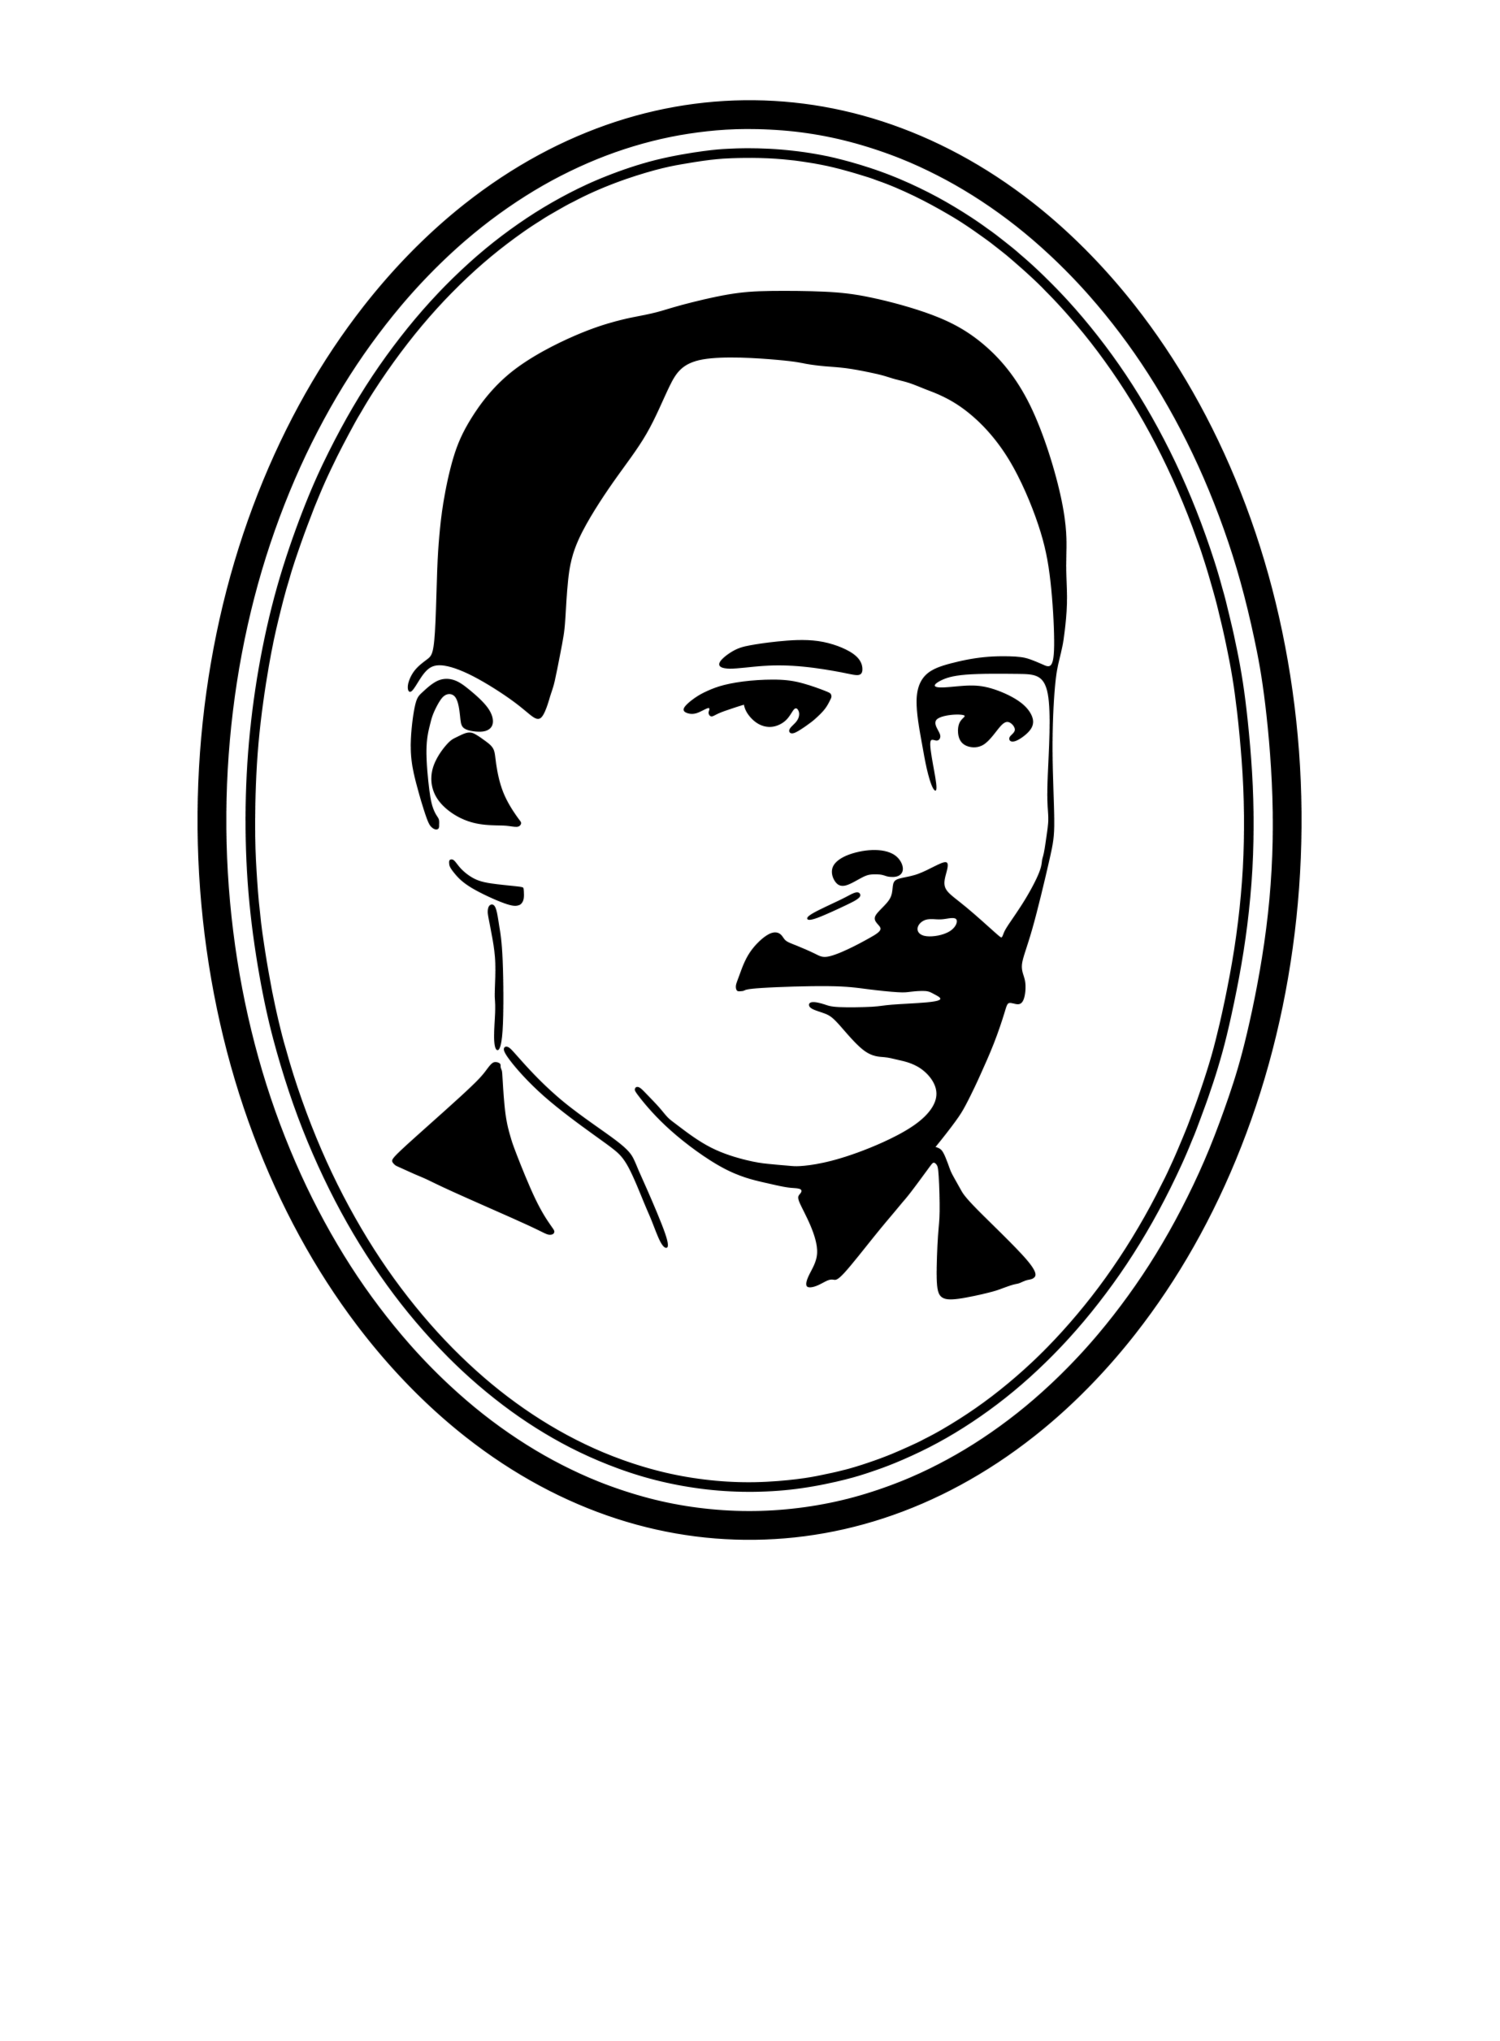 F. Hallett & Son